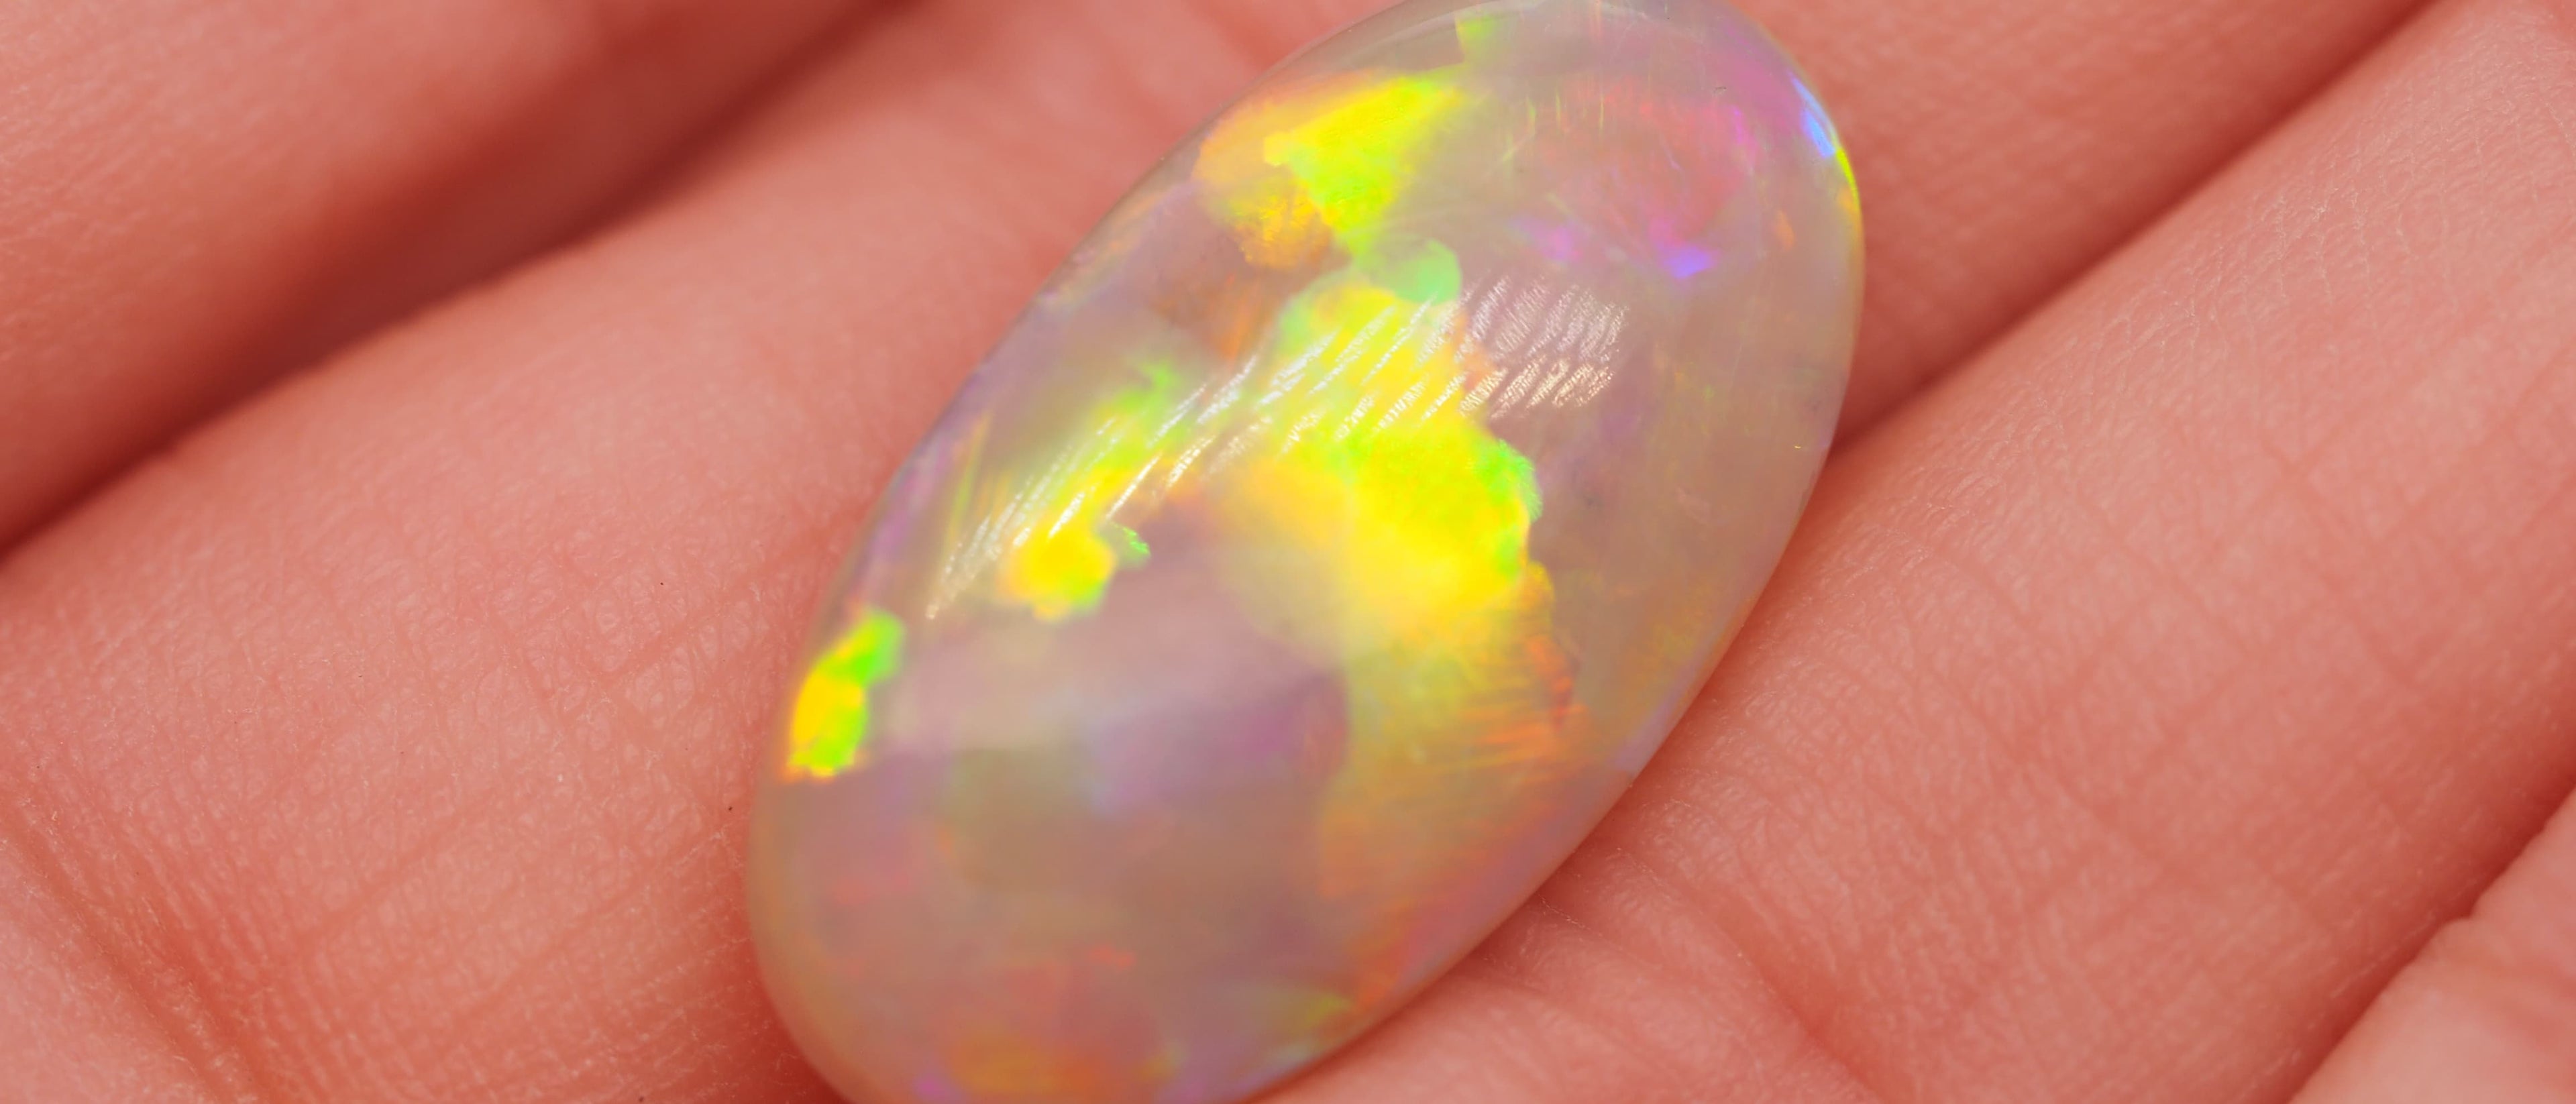 Australian fire opal in a hand